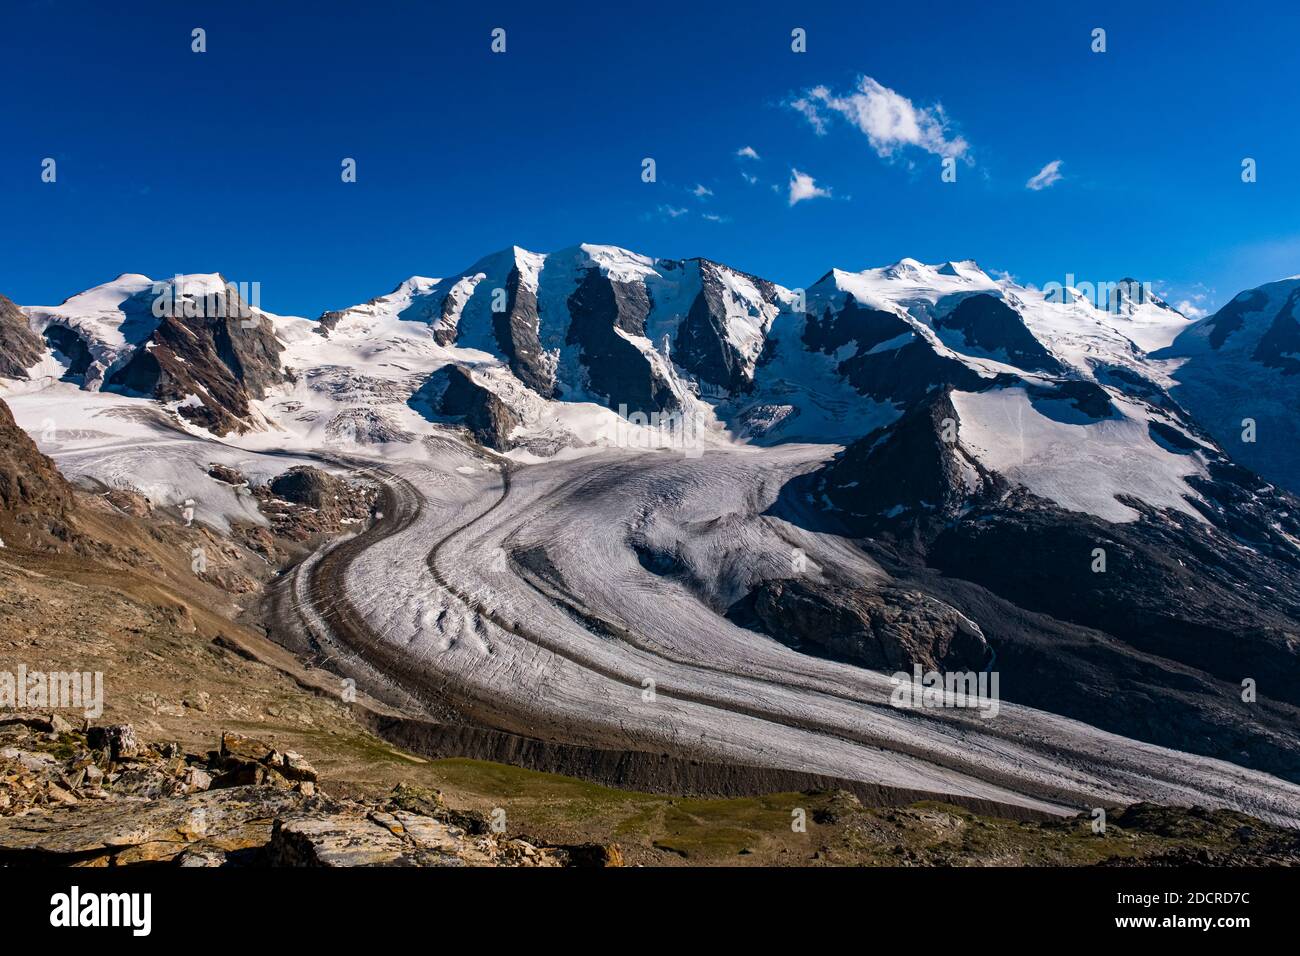 Las cumbres de Piz Palü y Bella Vista y el glaciar pers, visto desde la estación de teleférico y la cabaña de montaña Diavolezza. Foto de stock